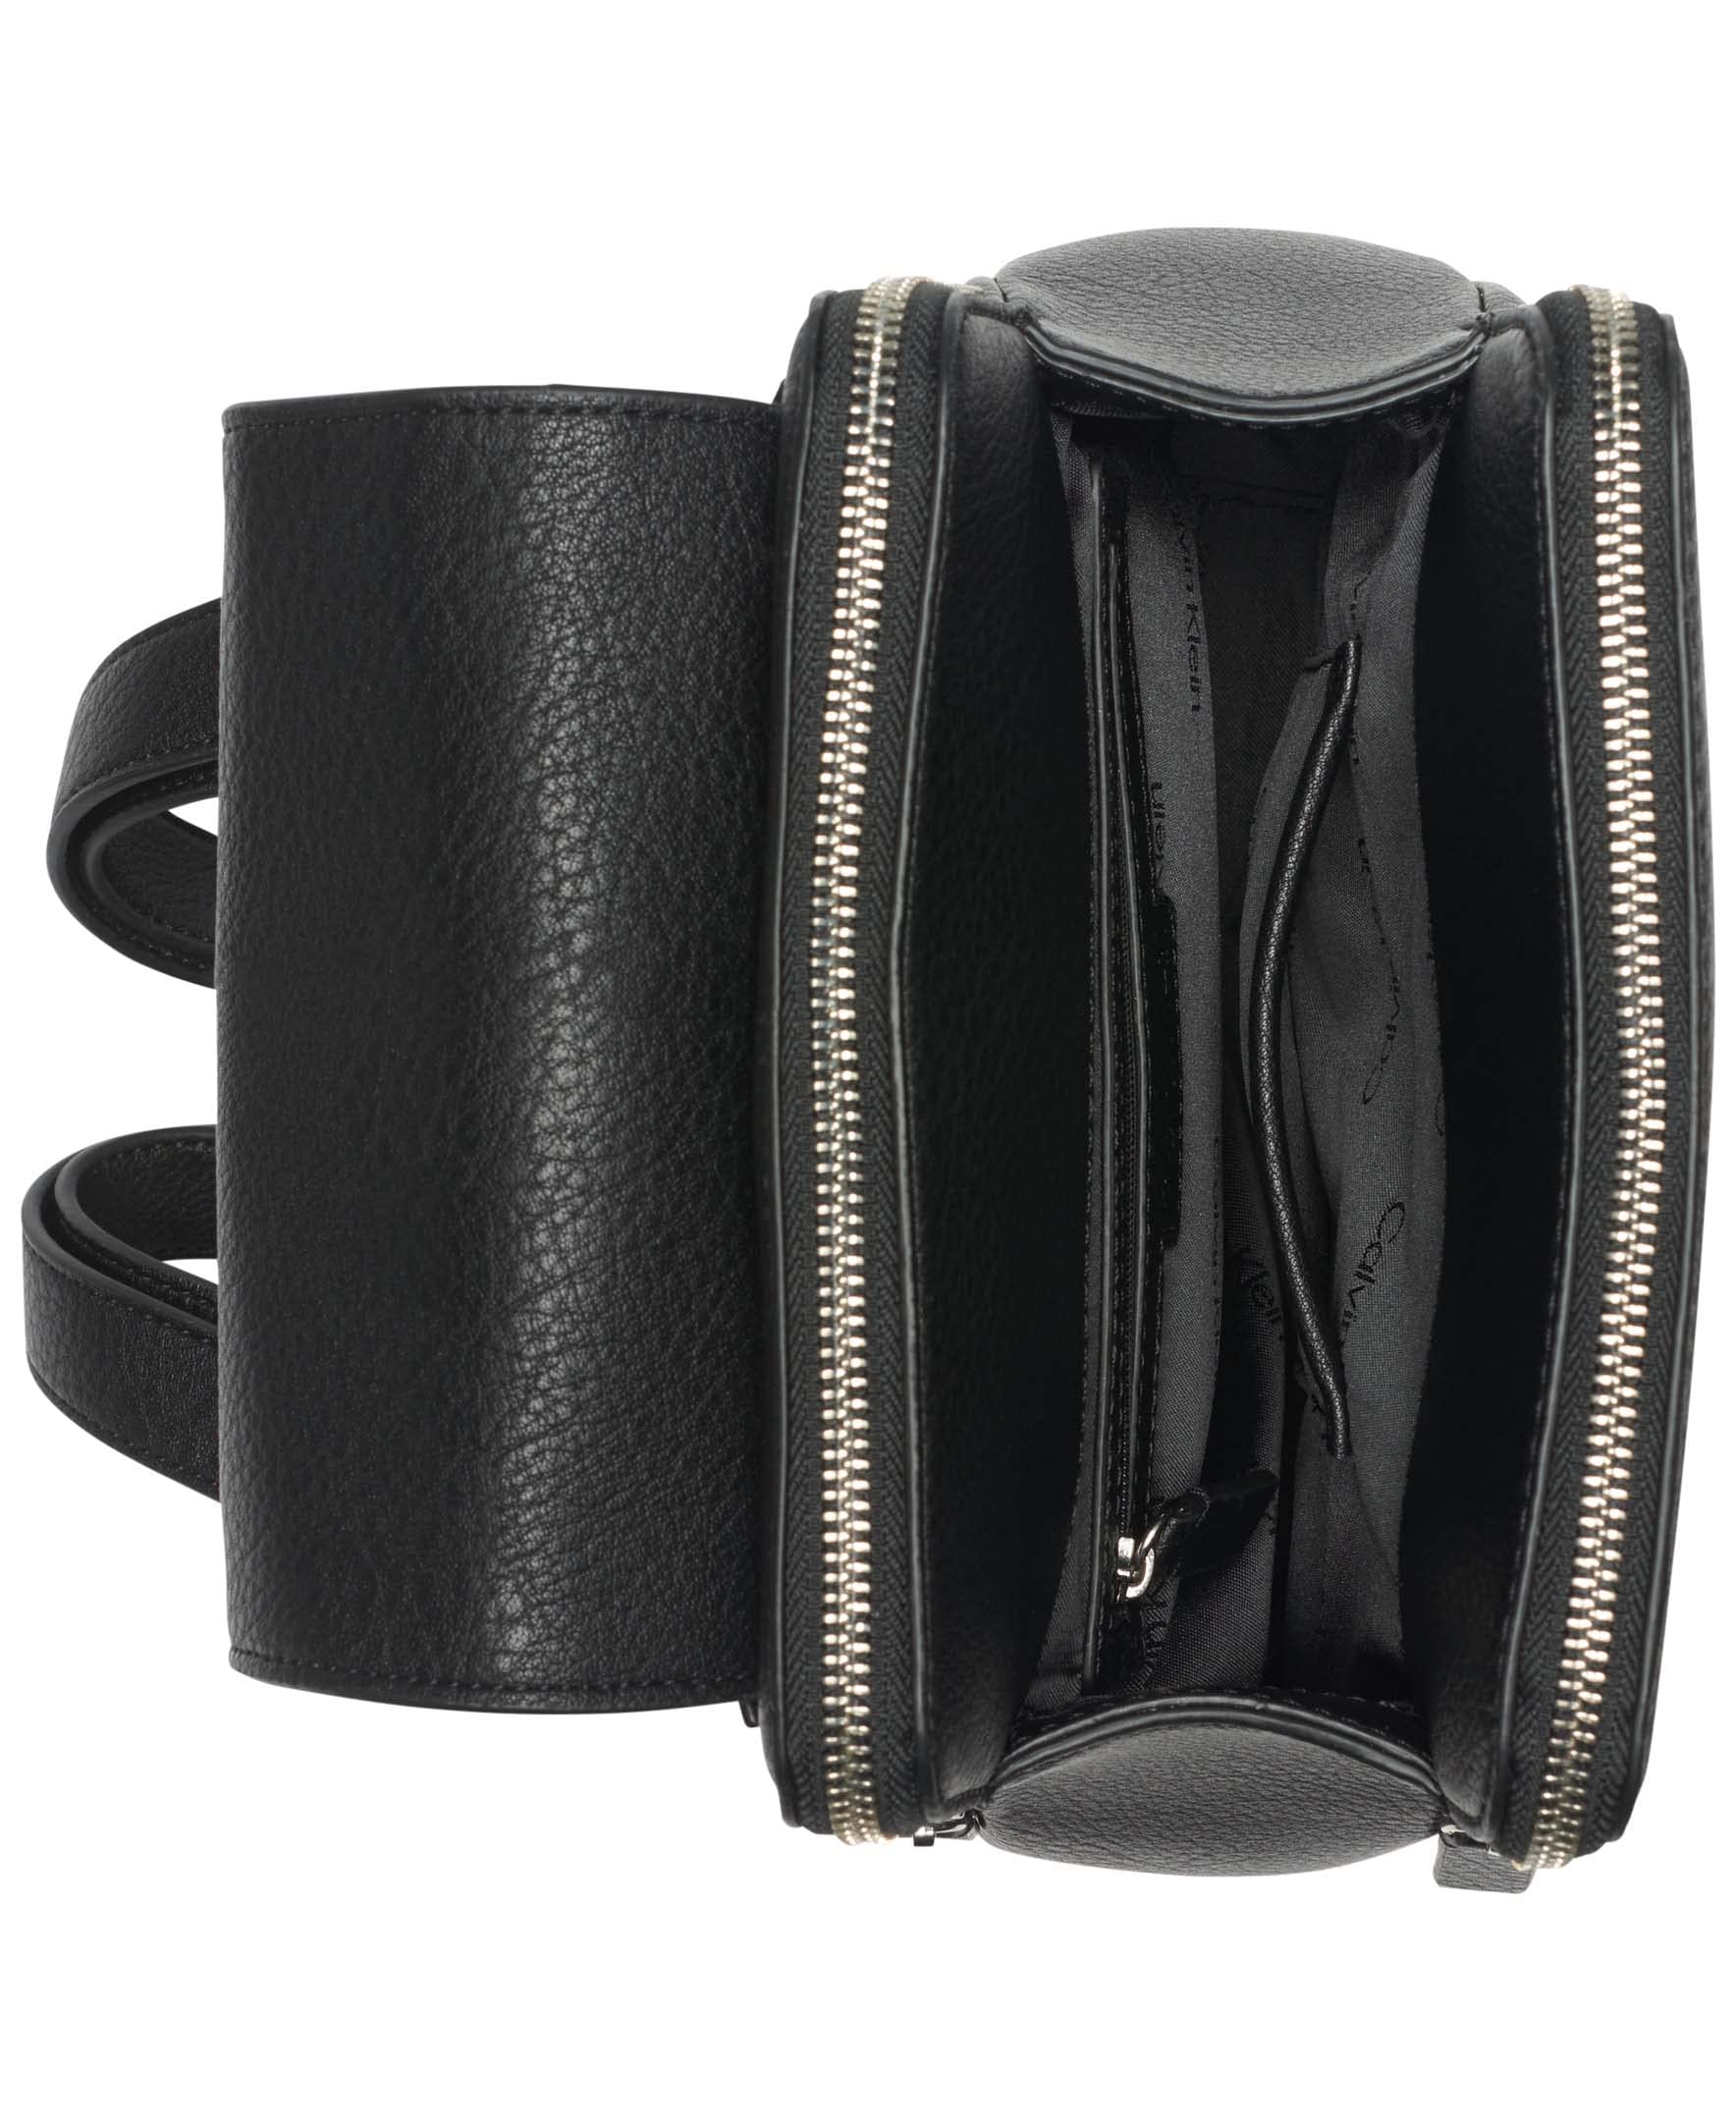 Calvin Klein Elaine Bubble Lamb Novelty Key Item Flap Backpack